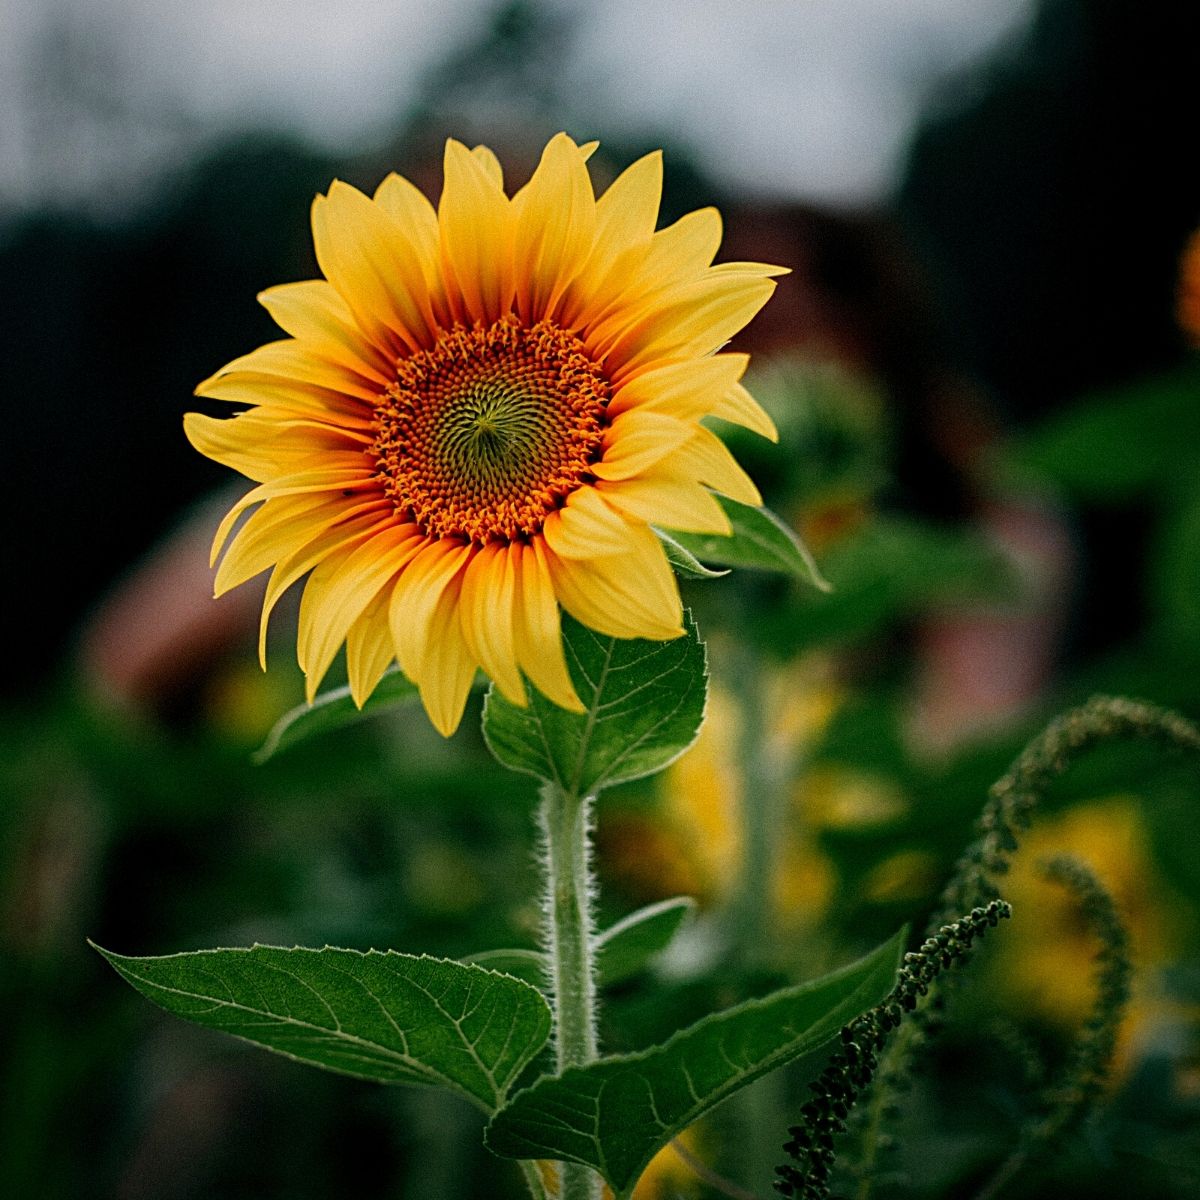 the sunflower, a classic summer flower